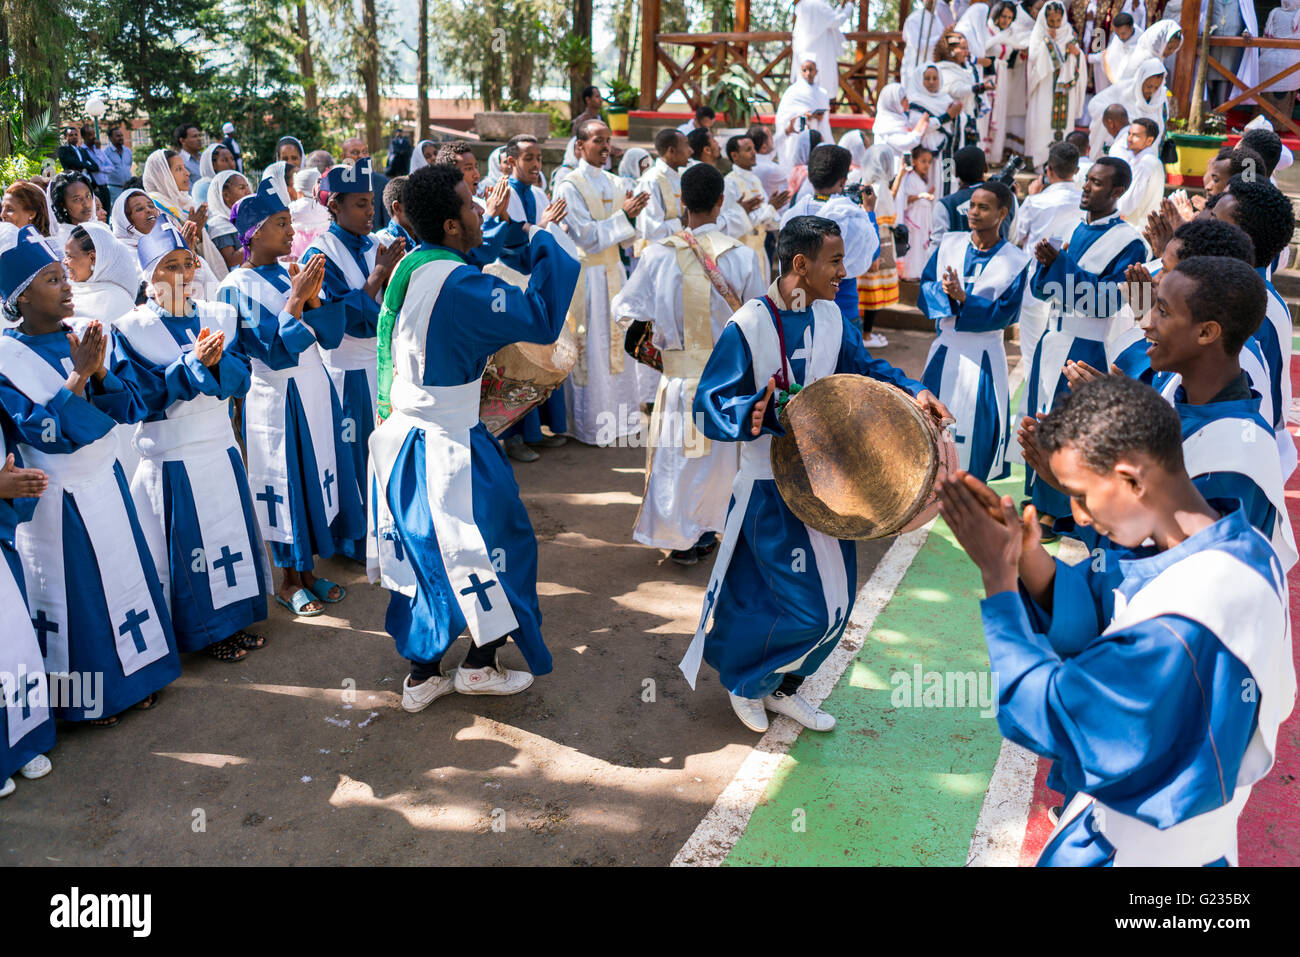 ADDIS ABEBA, Ethiopie - 21 mai : un jeune membre de l'église éthiopienne orthodoxe choeur chanter et chanter accompagné par un tambour lors d'une procession colorée le 21 mai 2016 à Addis Abeba, Ethiopie Banque D'Images